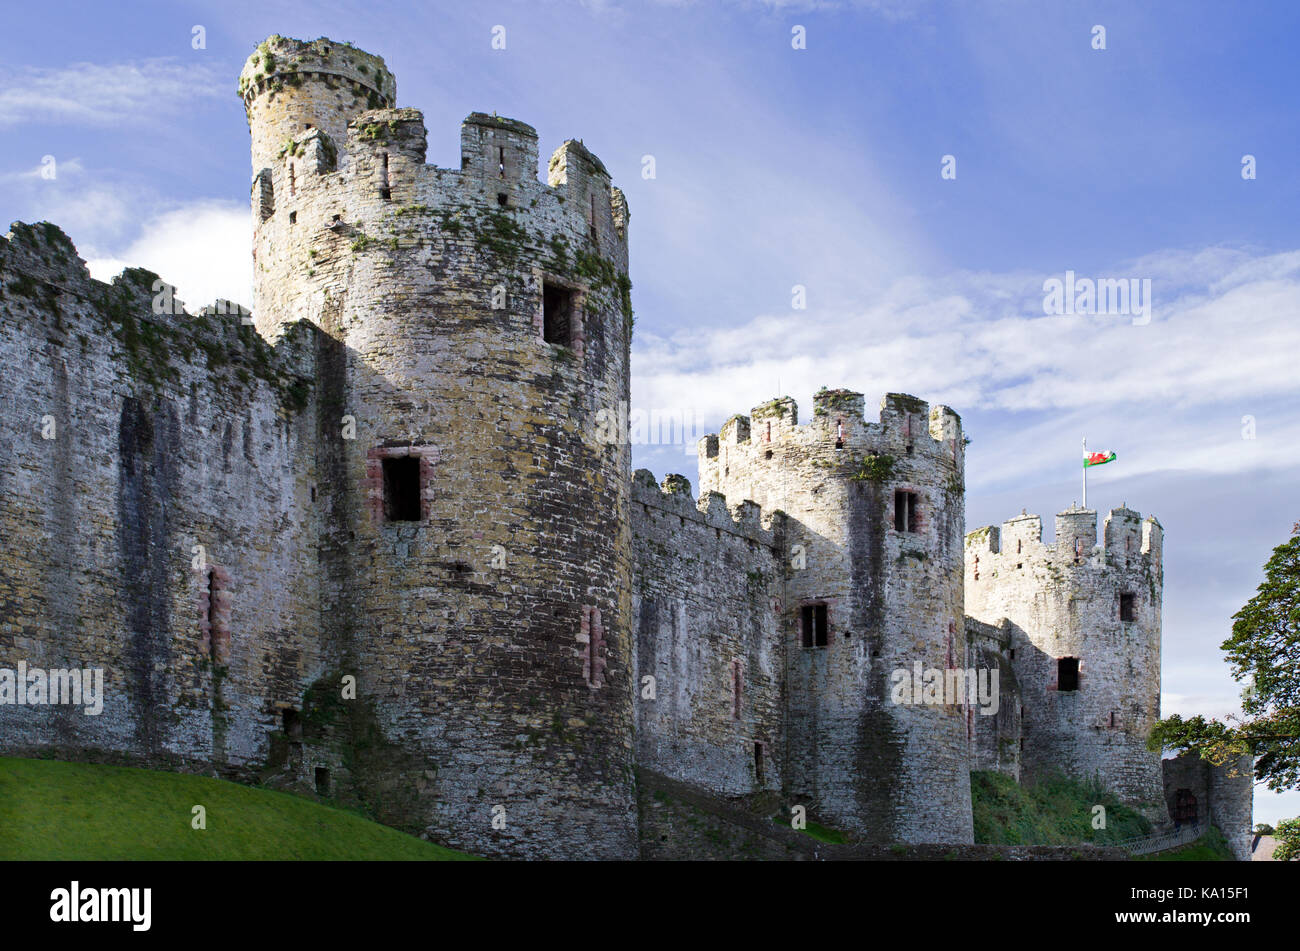 Château de Conwy, une fortification médiévale à Conwy (nord du Pays de Galles), a été construit par Édouard I lors de la conquête du Pays de Galles entre 1283 et 1289. Banque D'Images